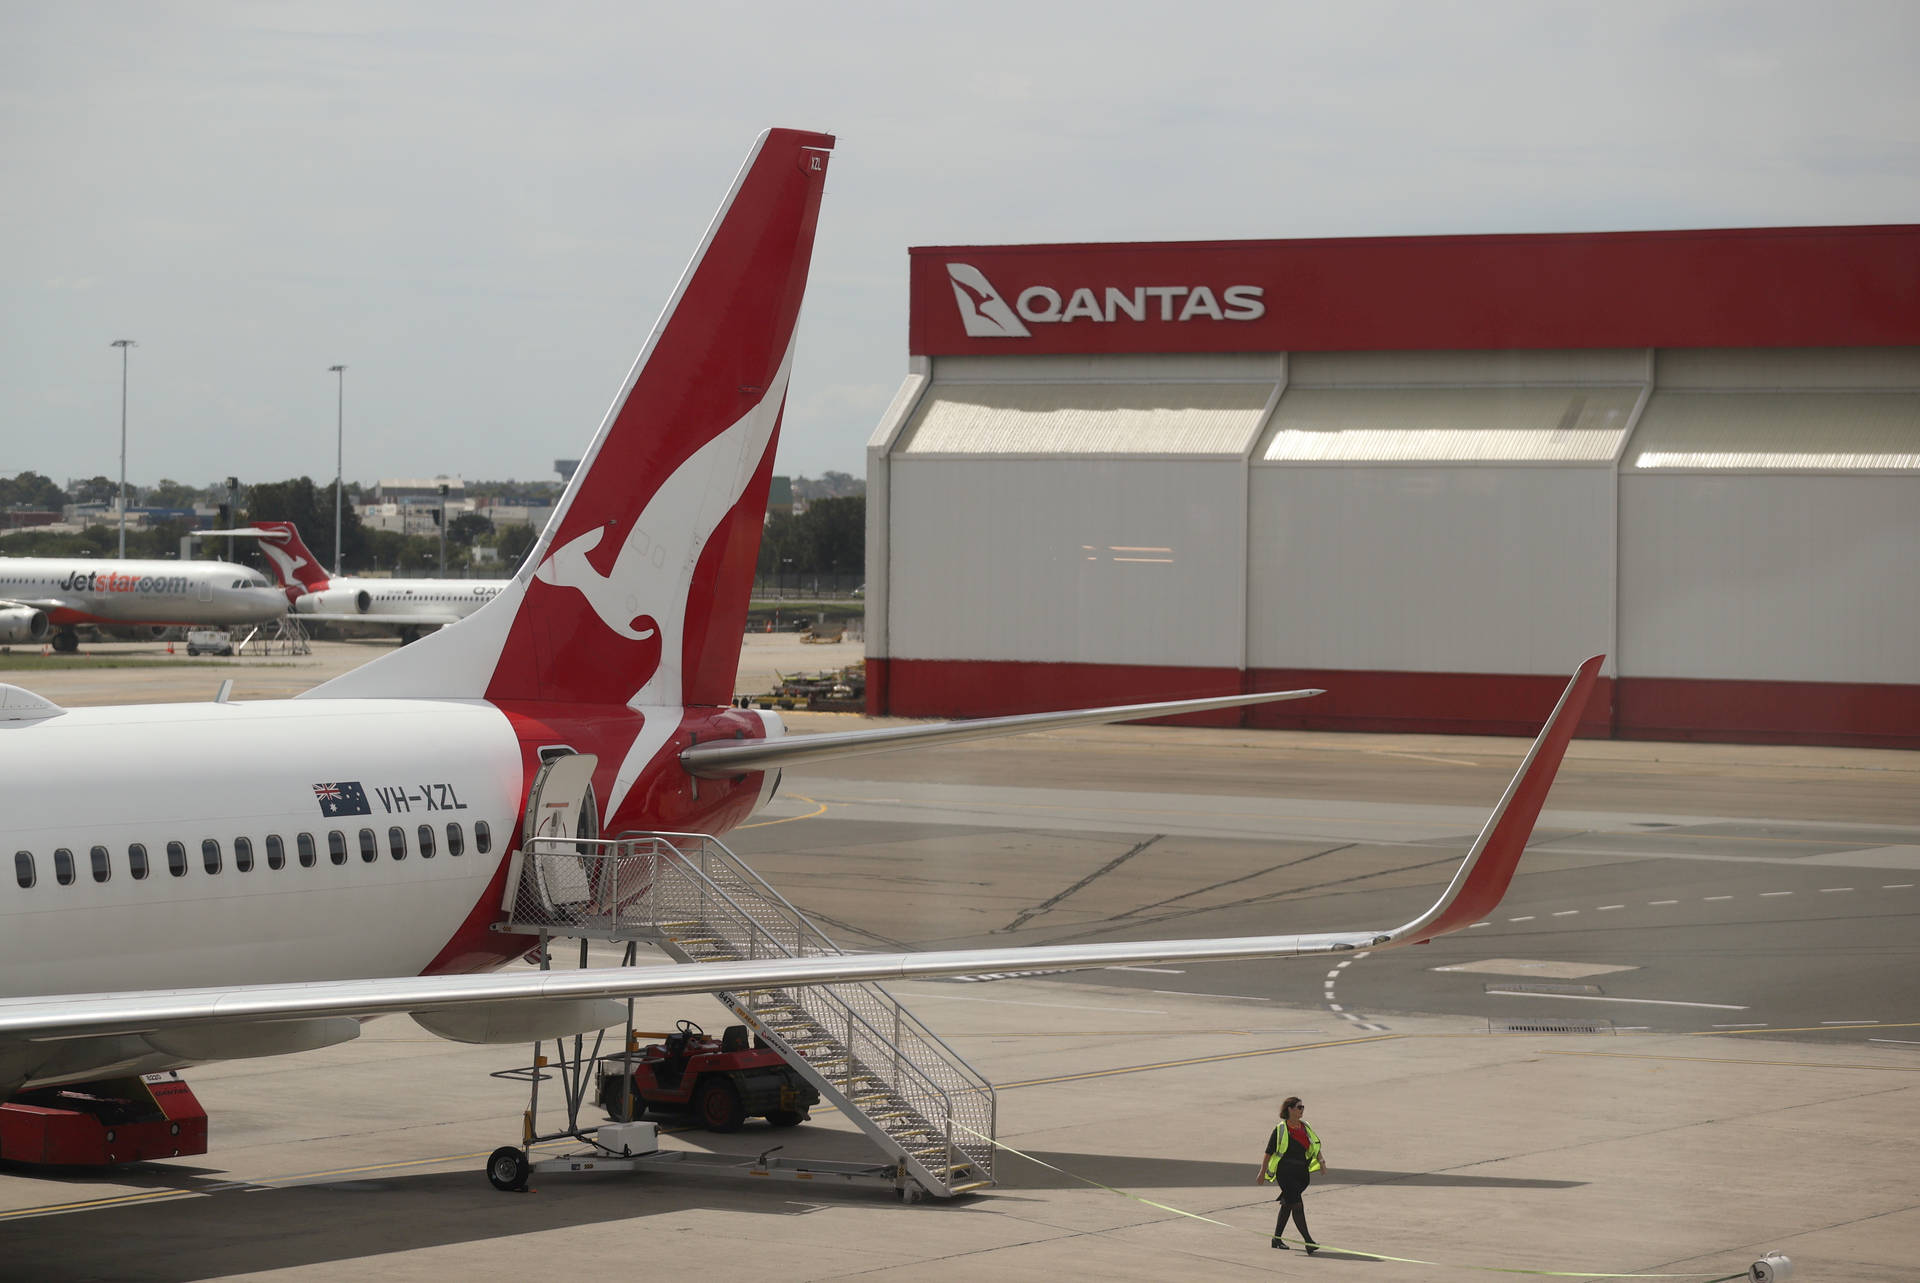 Qantas 5000 X 3340 Wallpaper